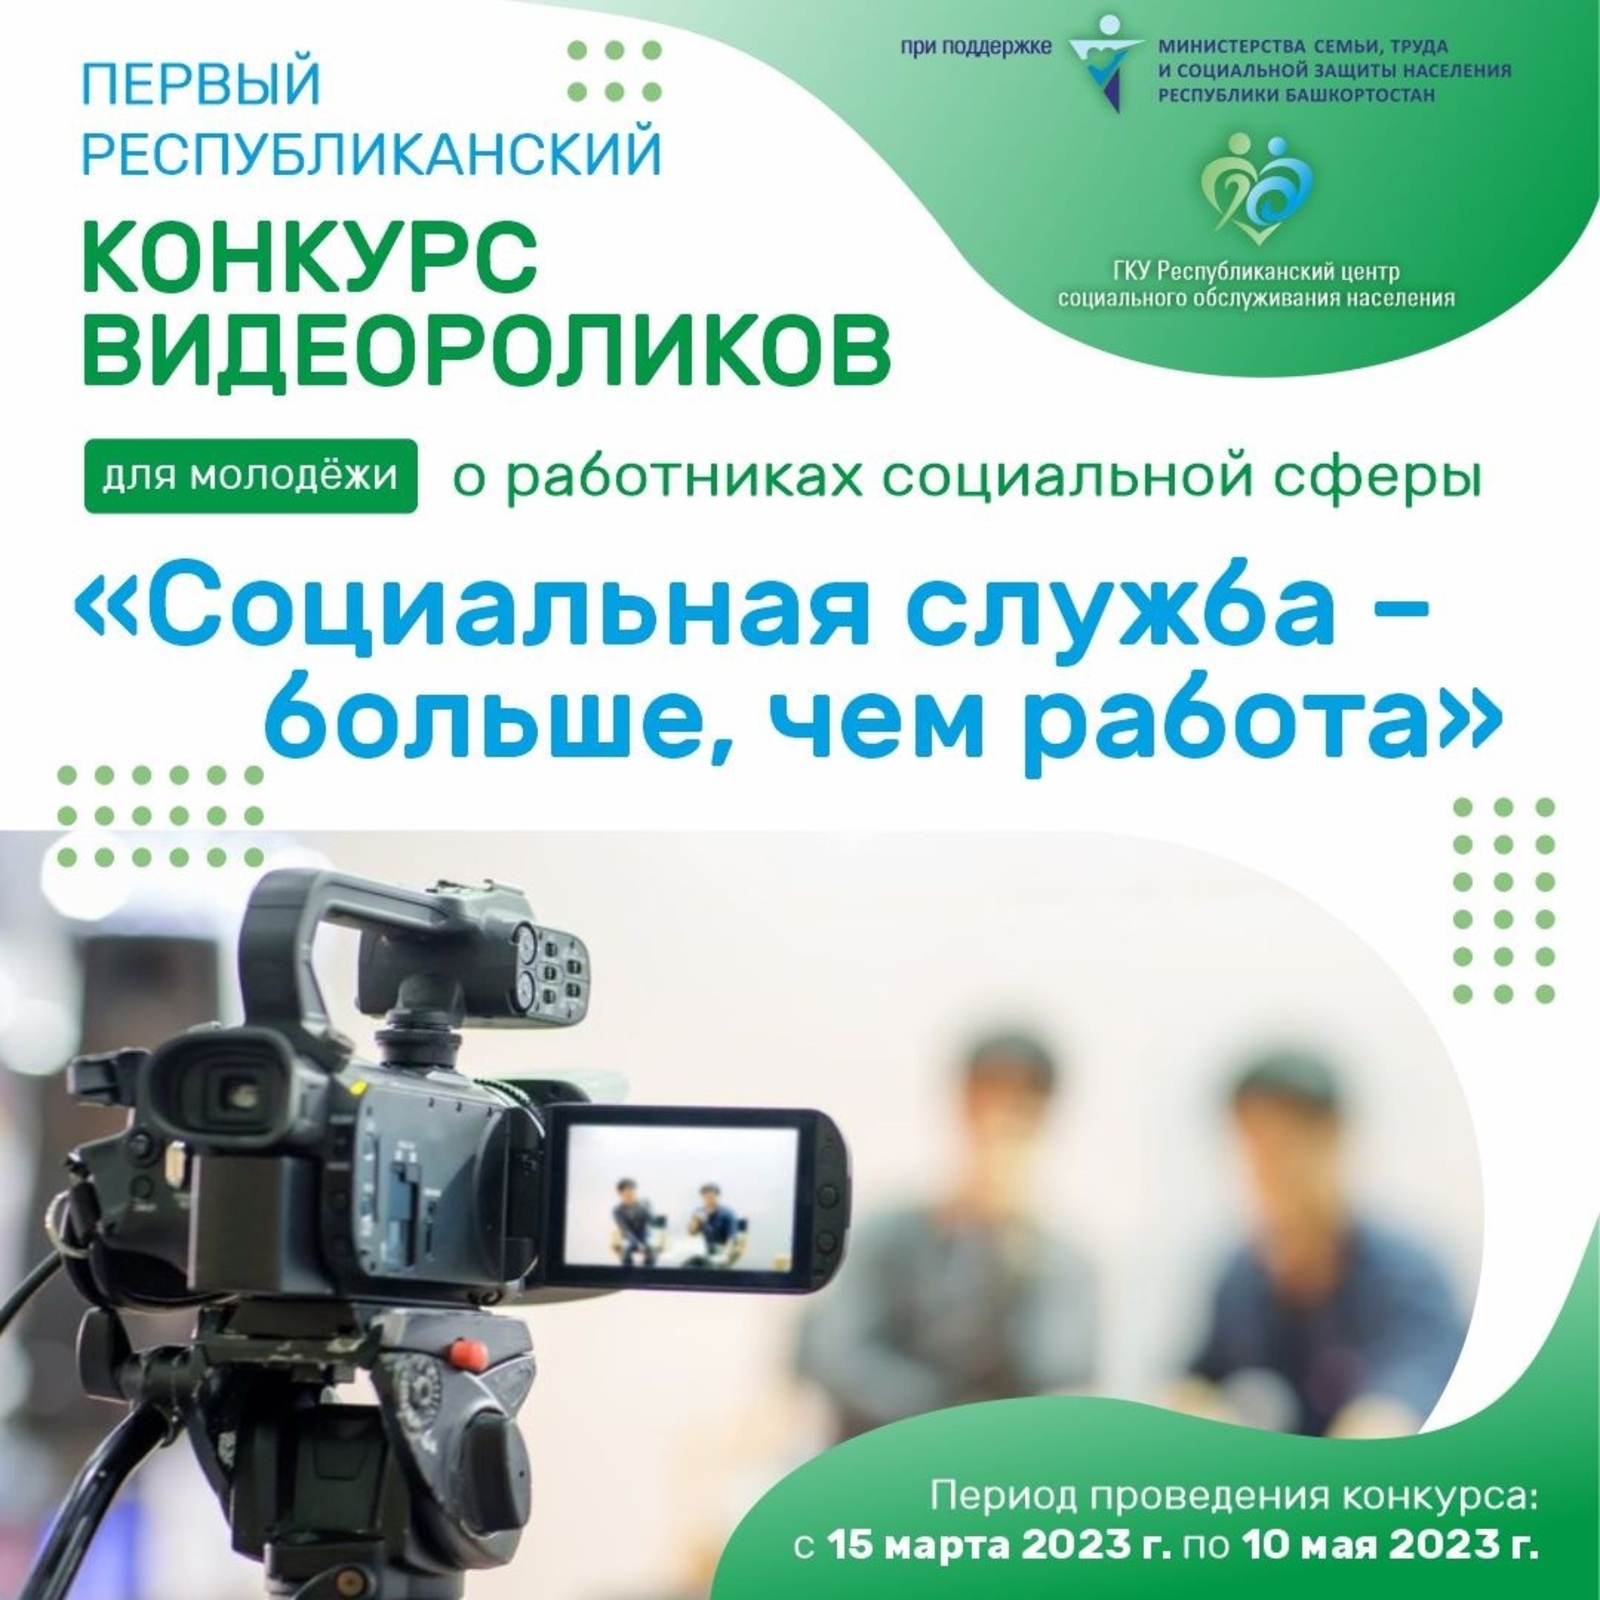 В Башкирии объявлен новый конкурс для старшеклассников и студентов под названием «Социальная служба – больше, чем работа»